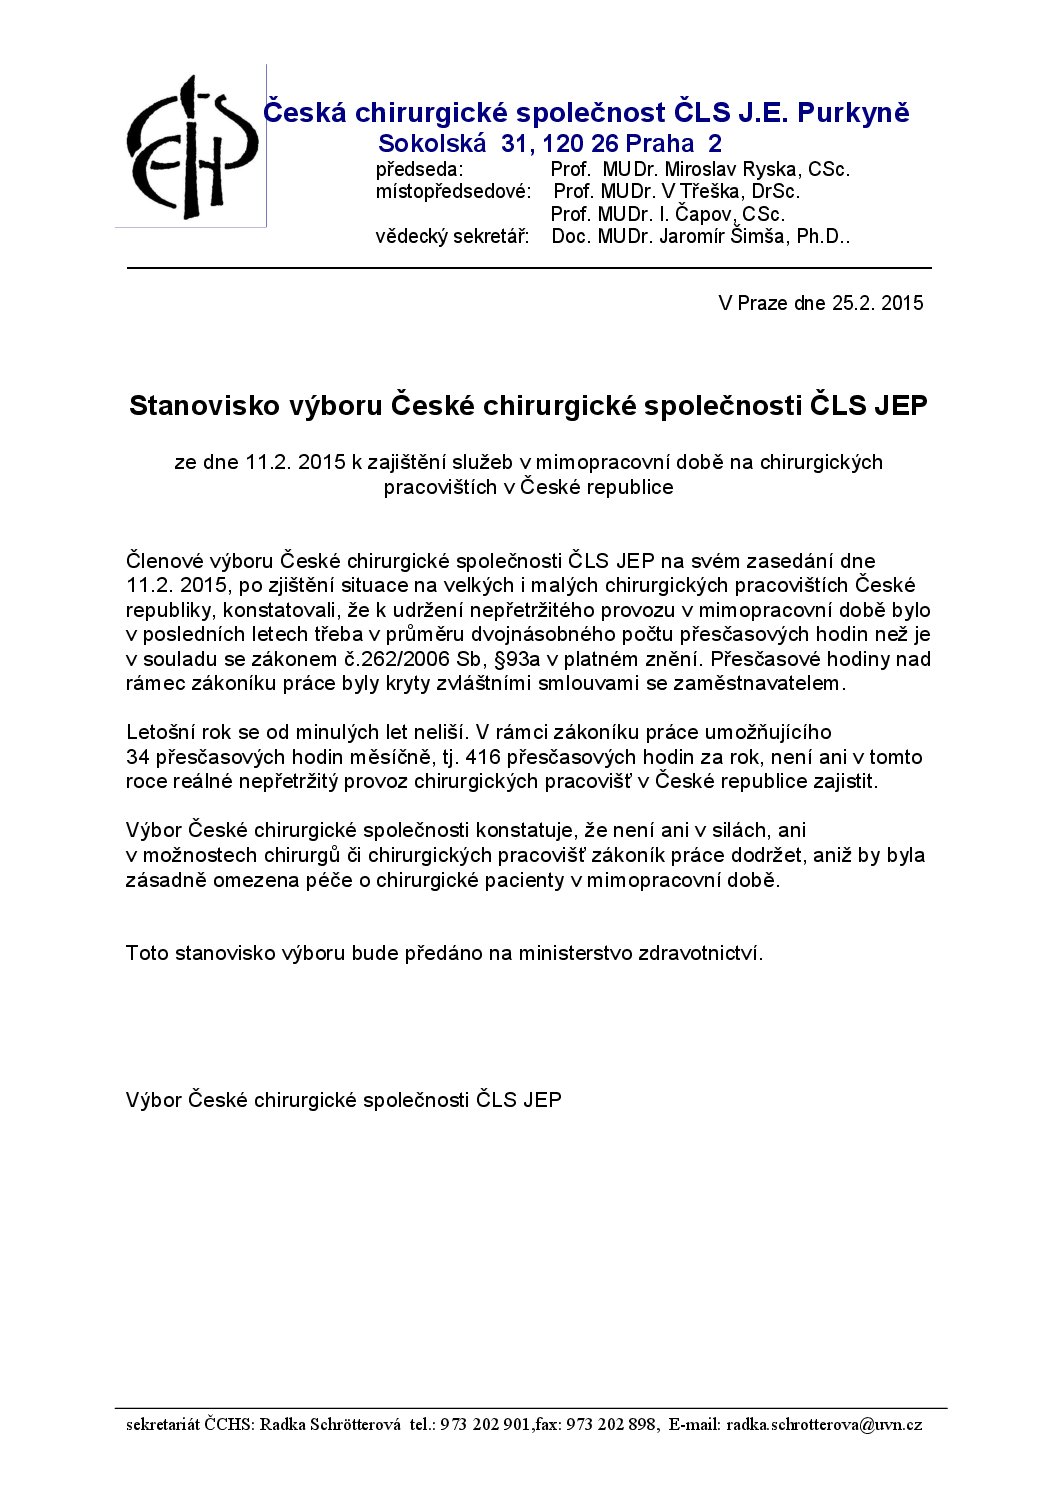 Stanovisko výboru ČCHS ČLS JEP k zajištění služeb v mimopracovní době (25. 2. 2015)